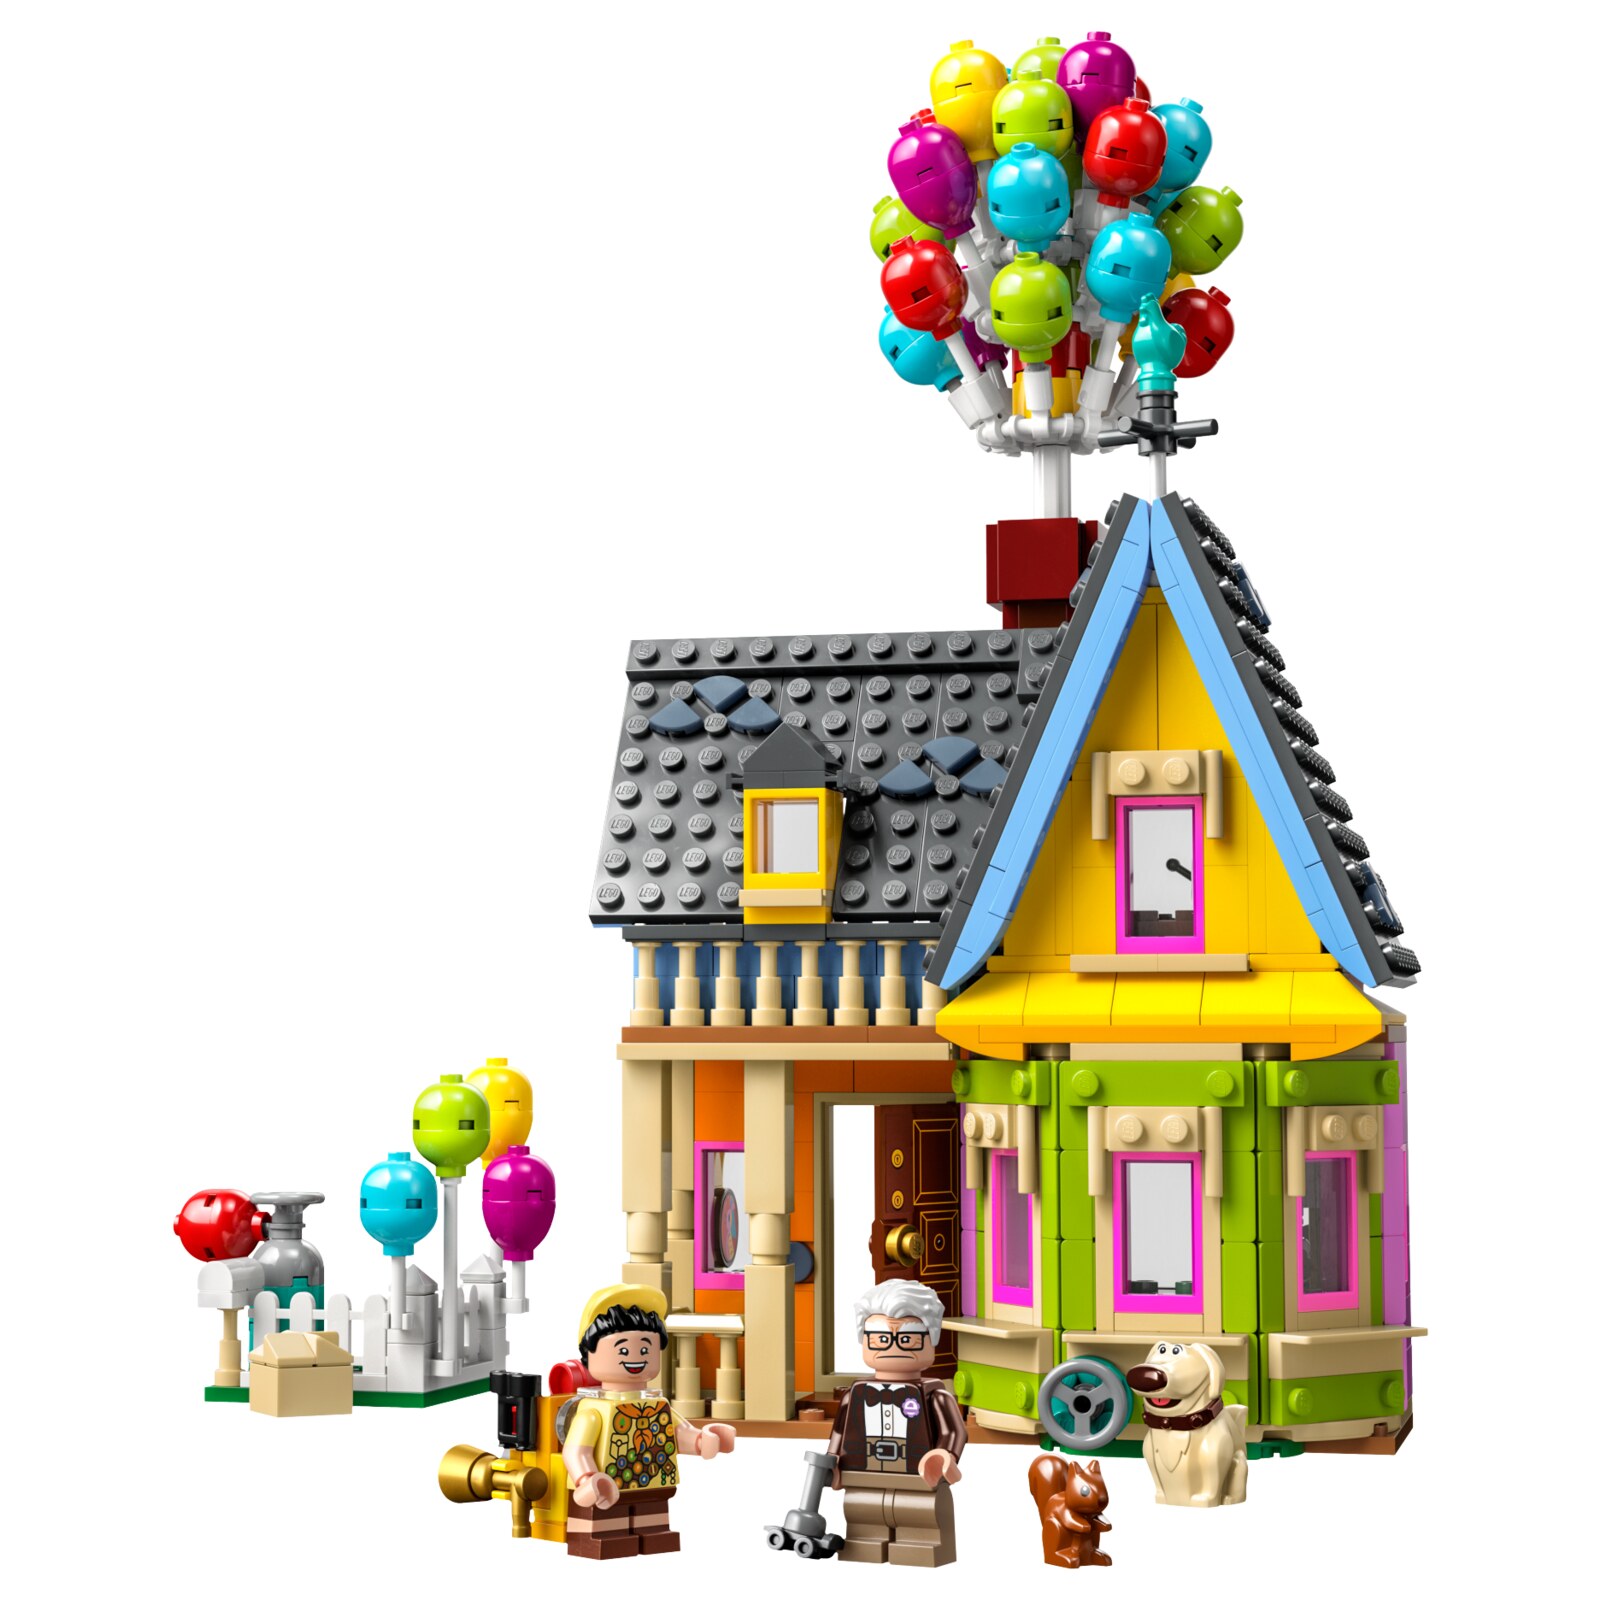 Конструктор LEGO Disney Дом из мультфильма Вверх, 598 деталей, 43217 конструктор ascelot сm 4012 дом с шарами